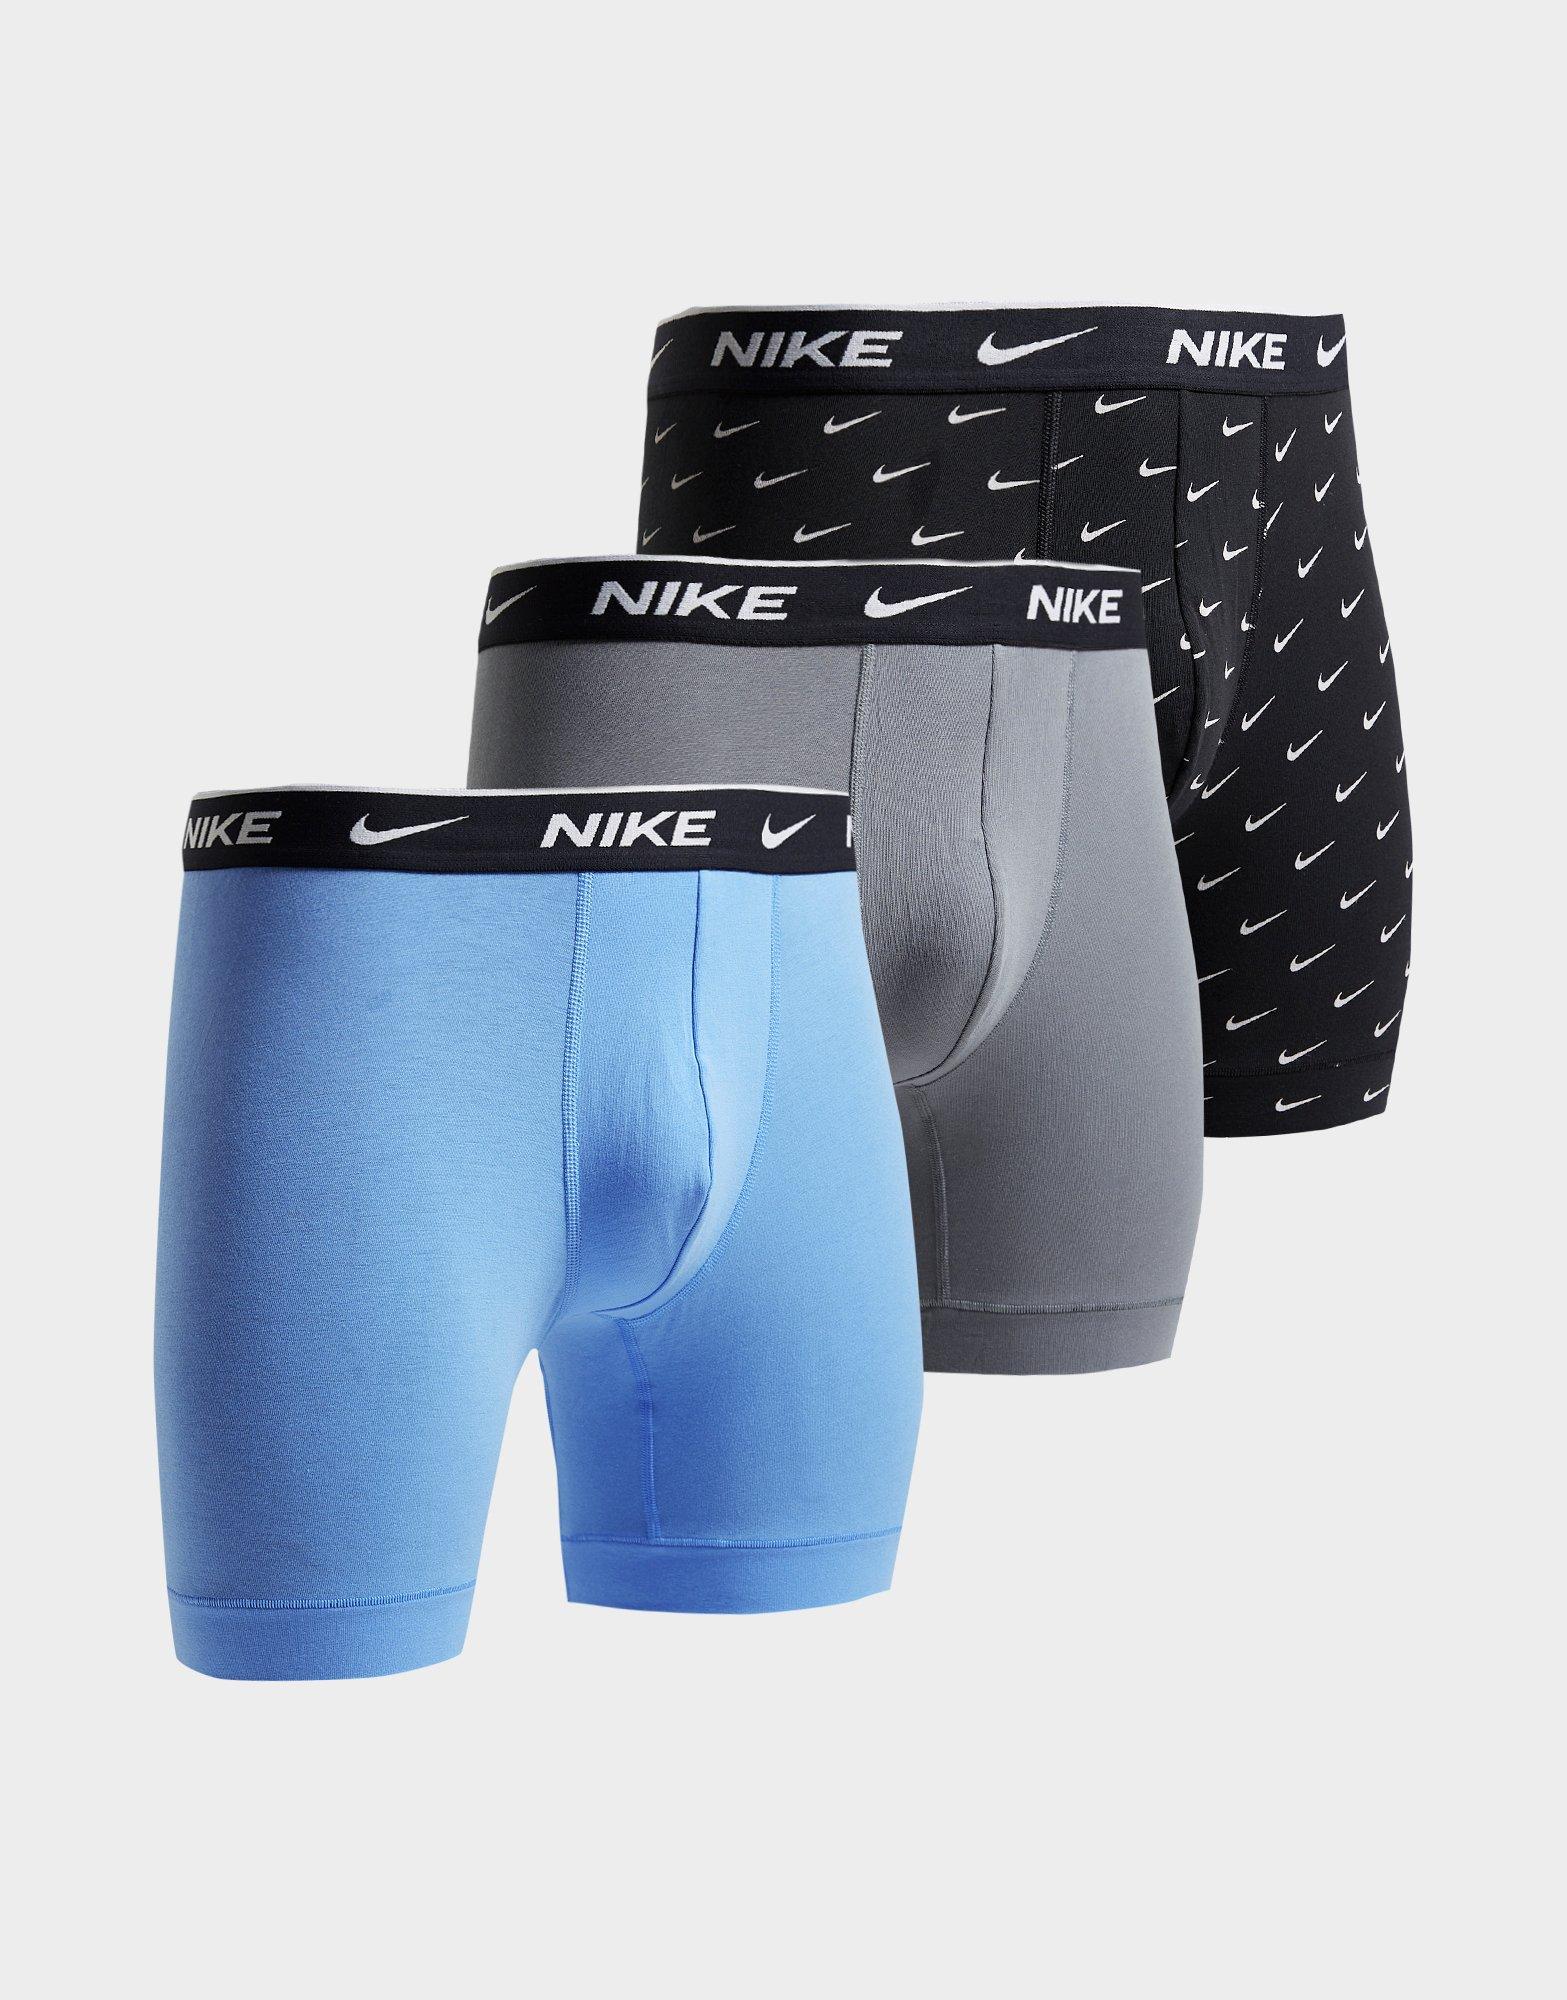 Nike 3 Pack Briefs Mens Black, £32.00